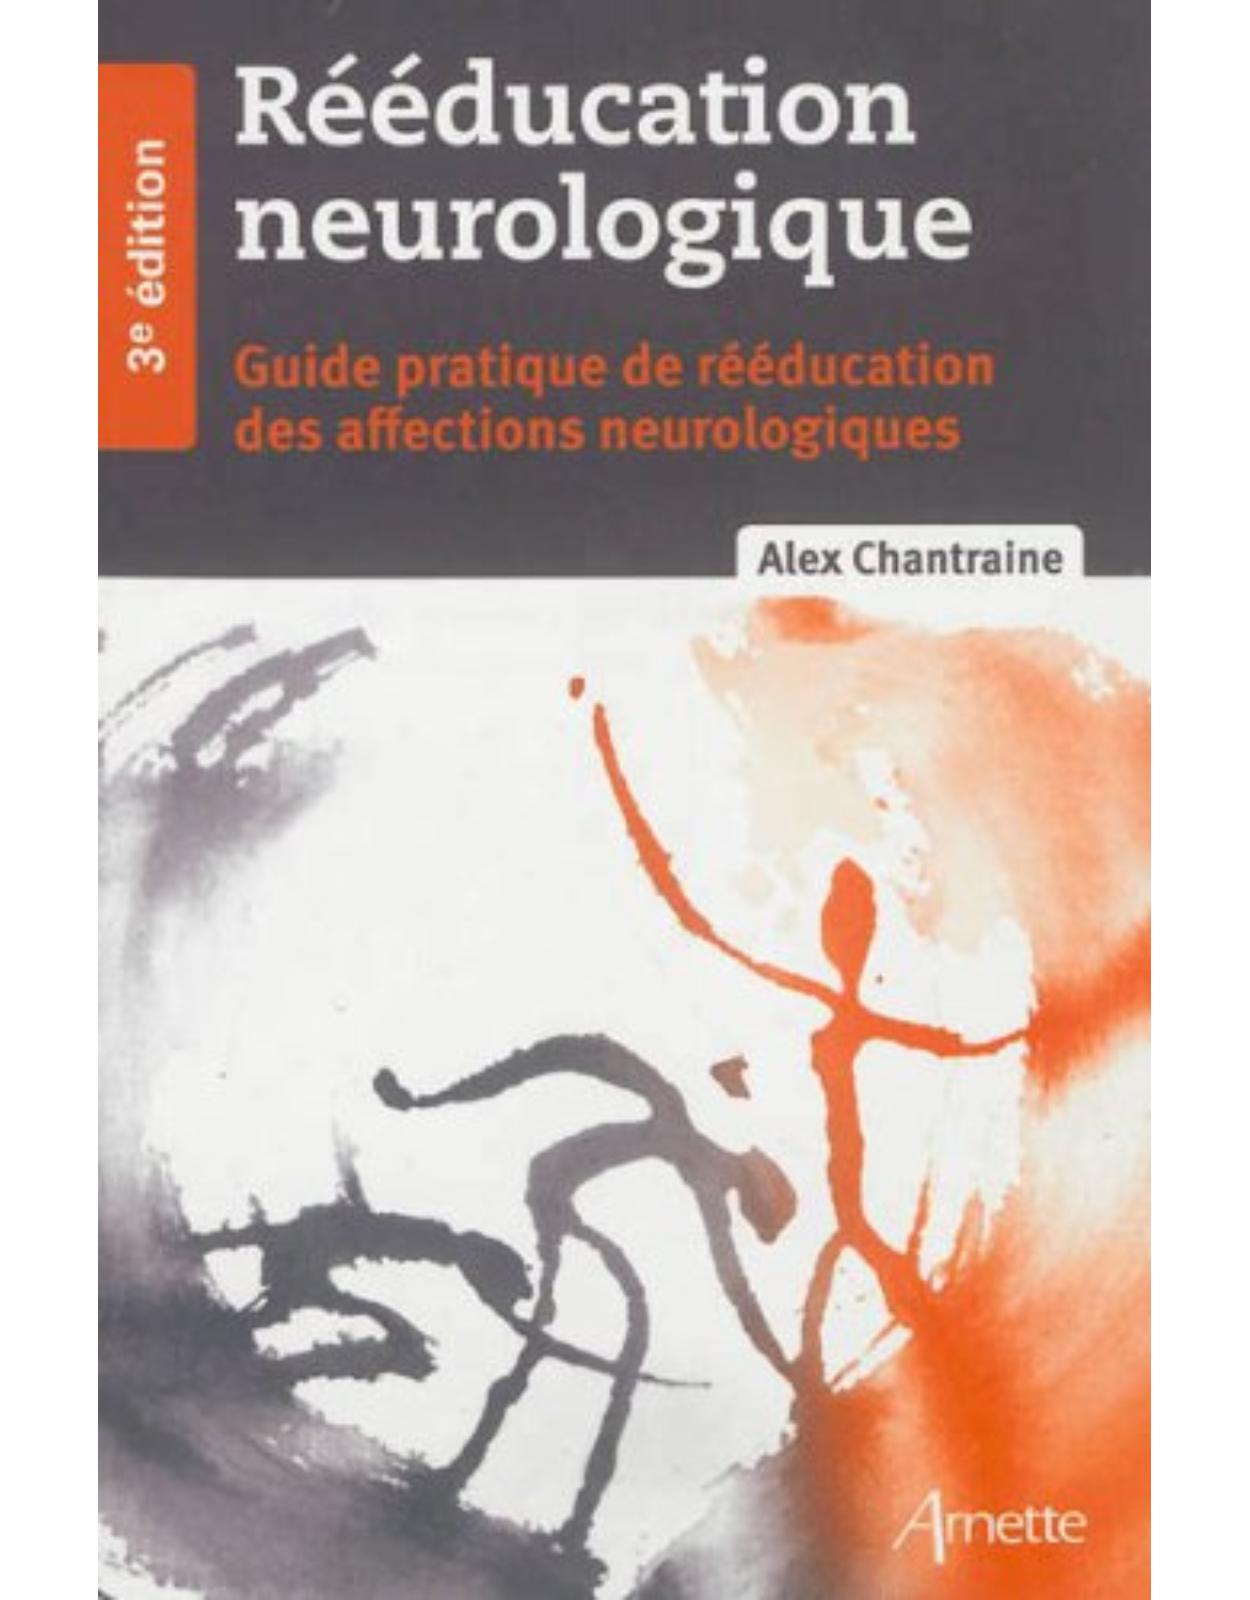 Rééducation neurologique - Guide pratique de rééducation des affections neurologiques 3e édition